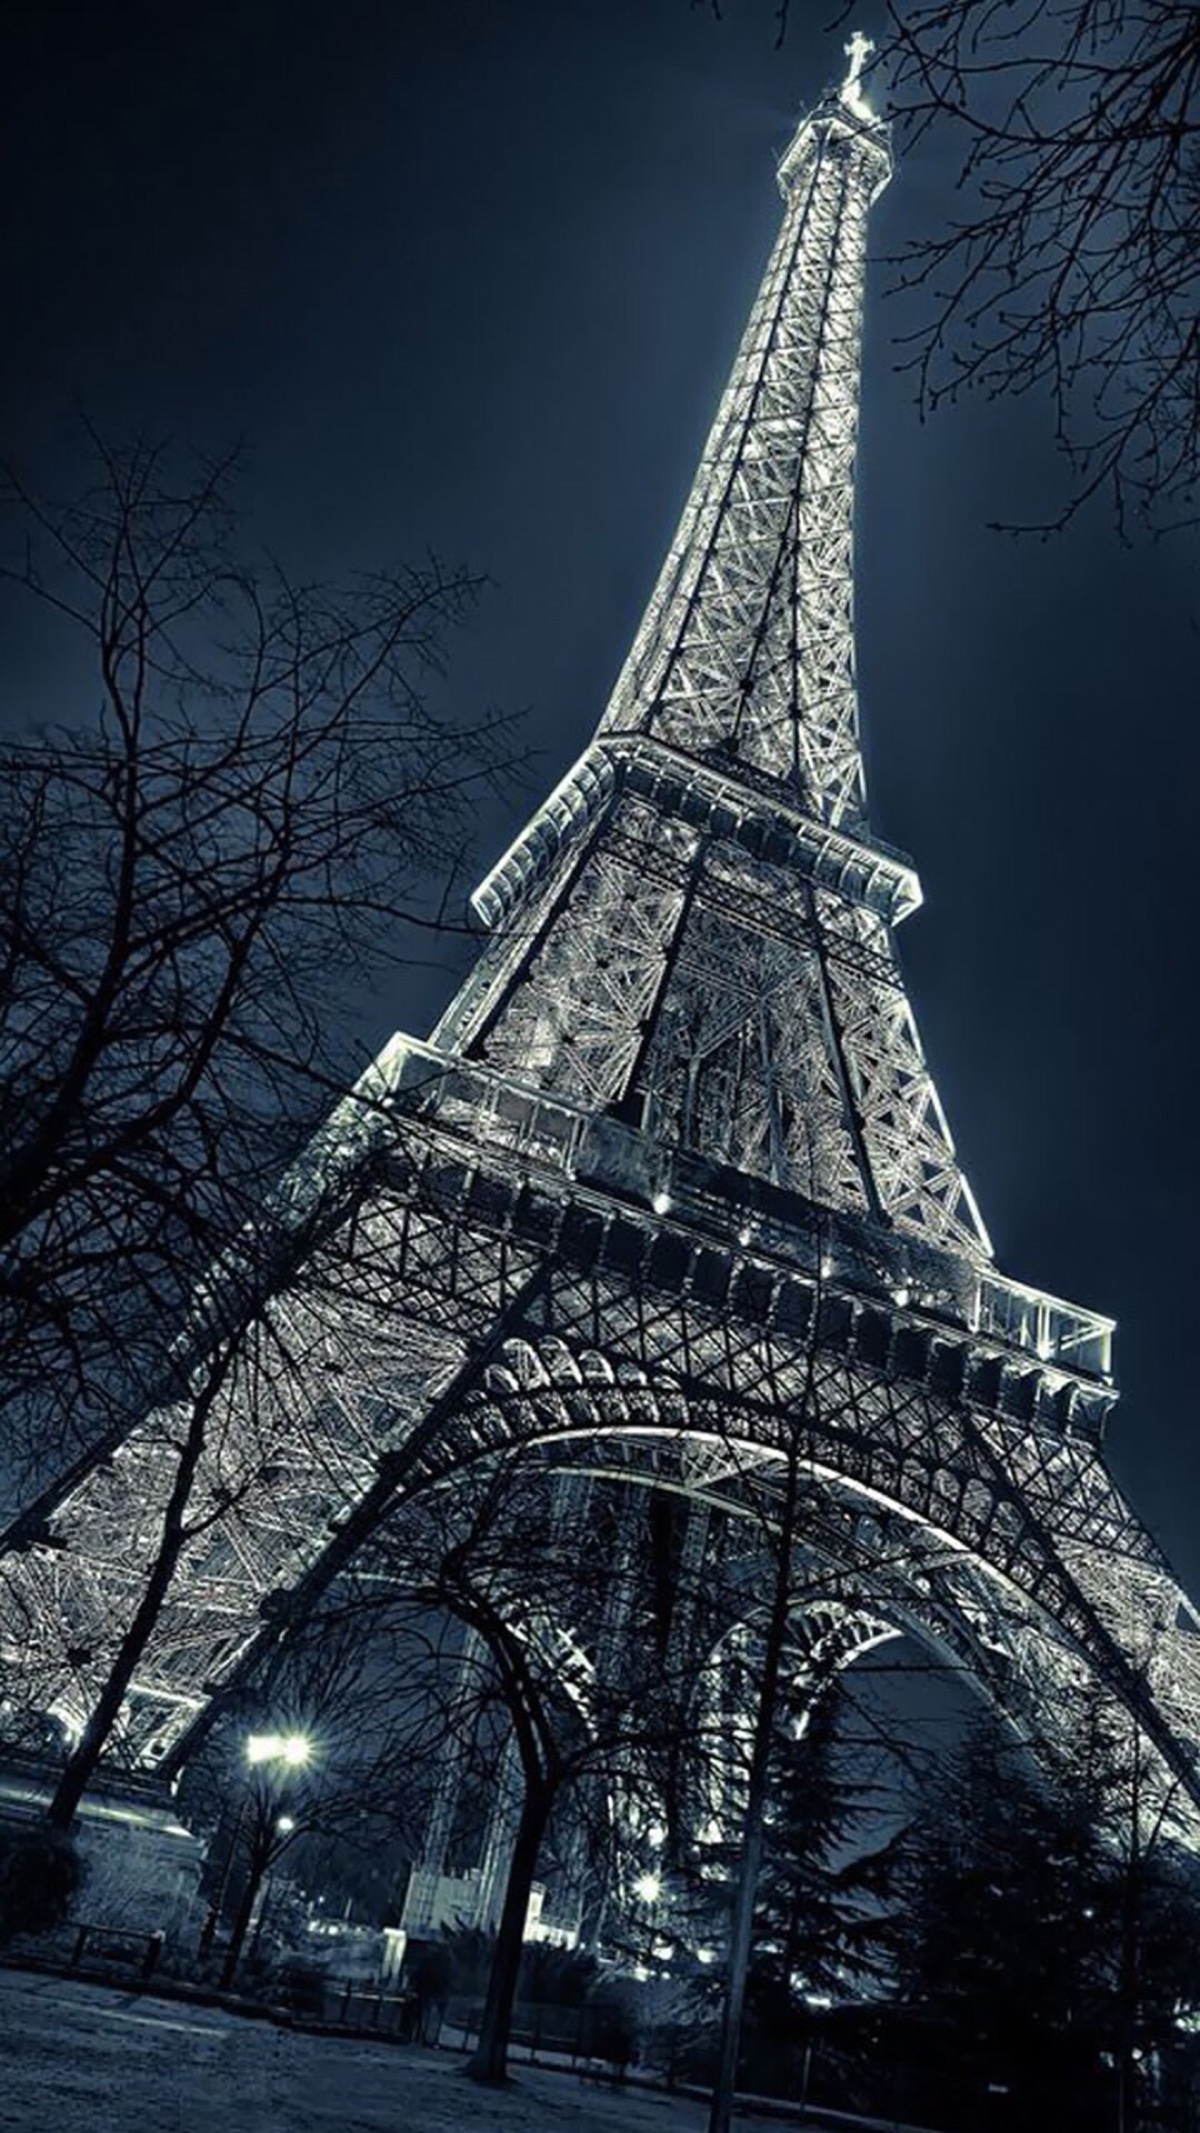 唯美巴黎埃菲尔铁塔壁纸锁屏夜景 堆糖 美图壁纸兴趣社区